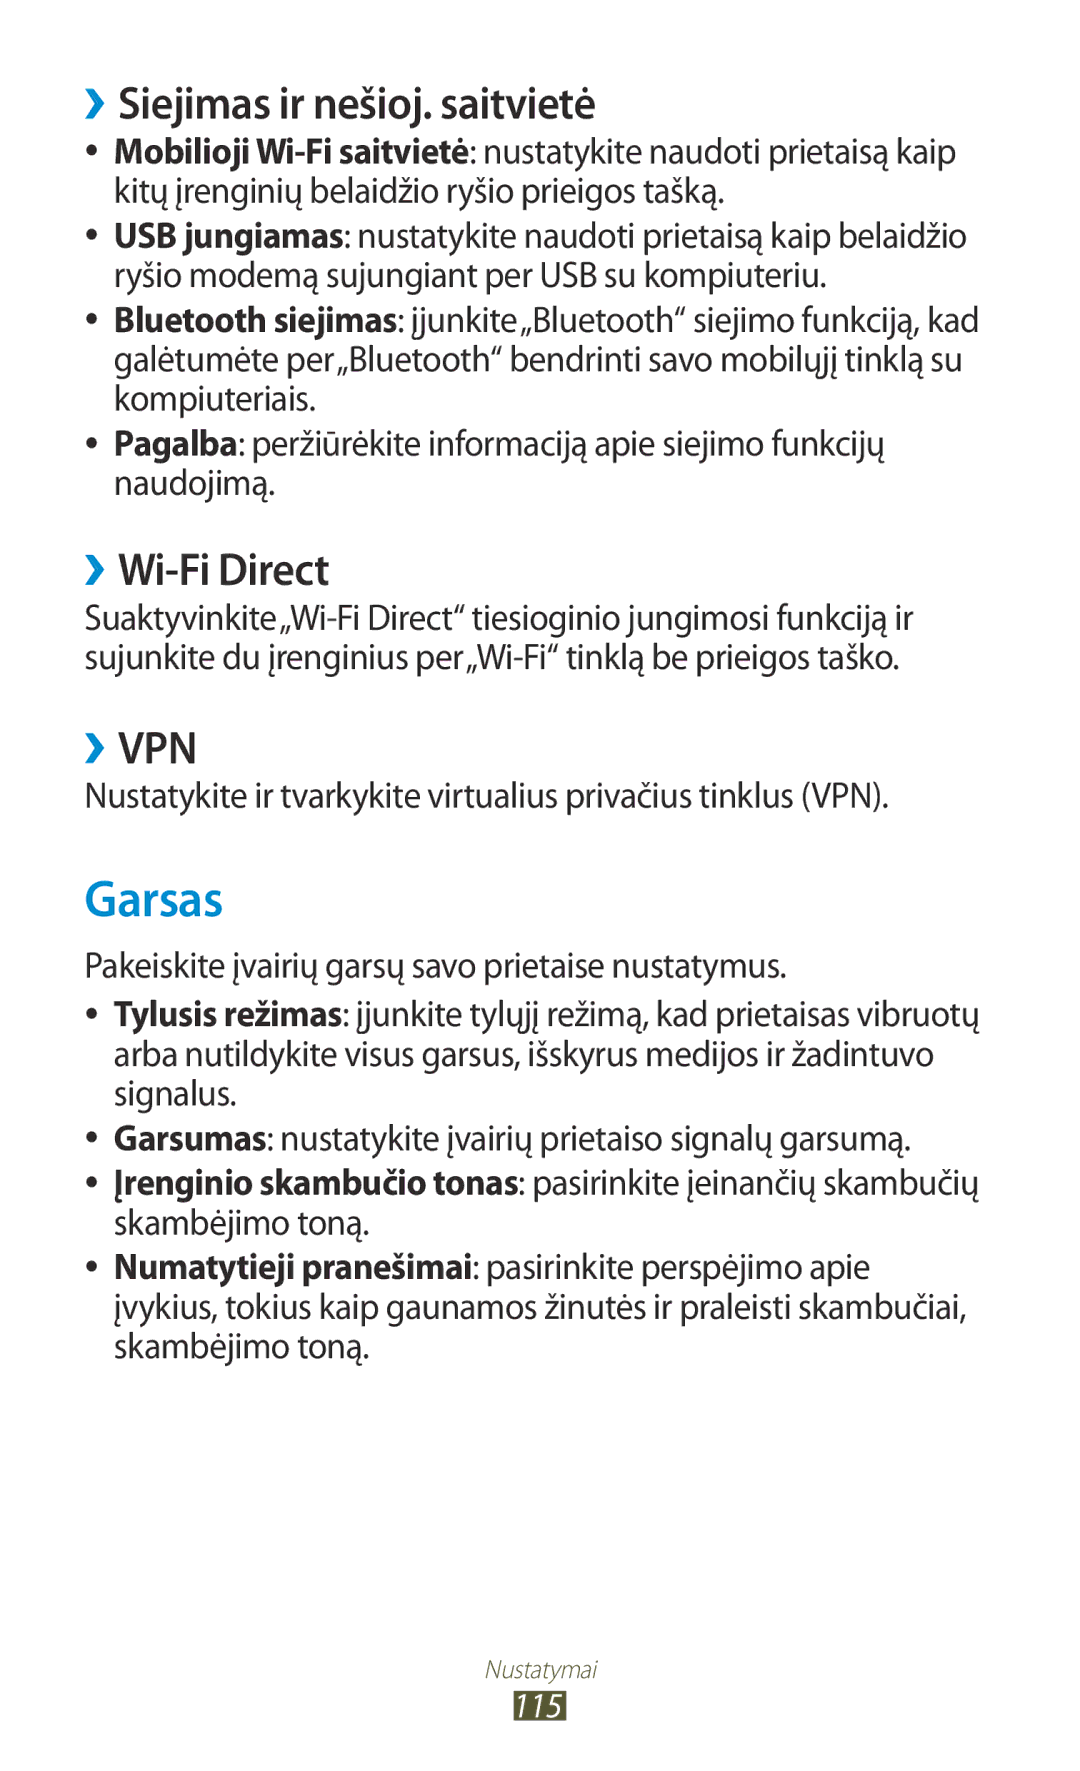 Samsung GT-S5301ZKASEB, GT-S5301ZWASEB manual Garsas, ››Siejimas ir nešioj. saitvietė, ››Wi-Fi Direct 